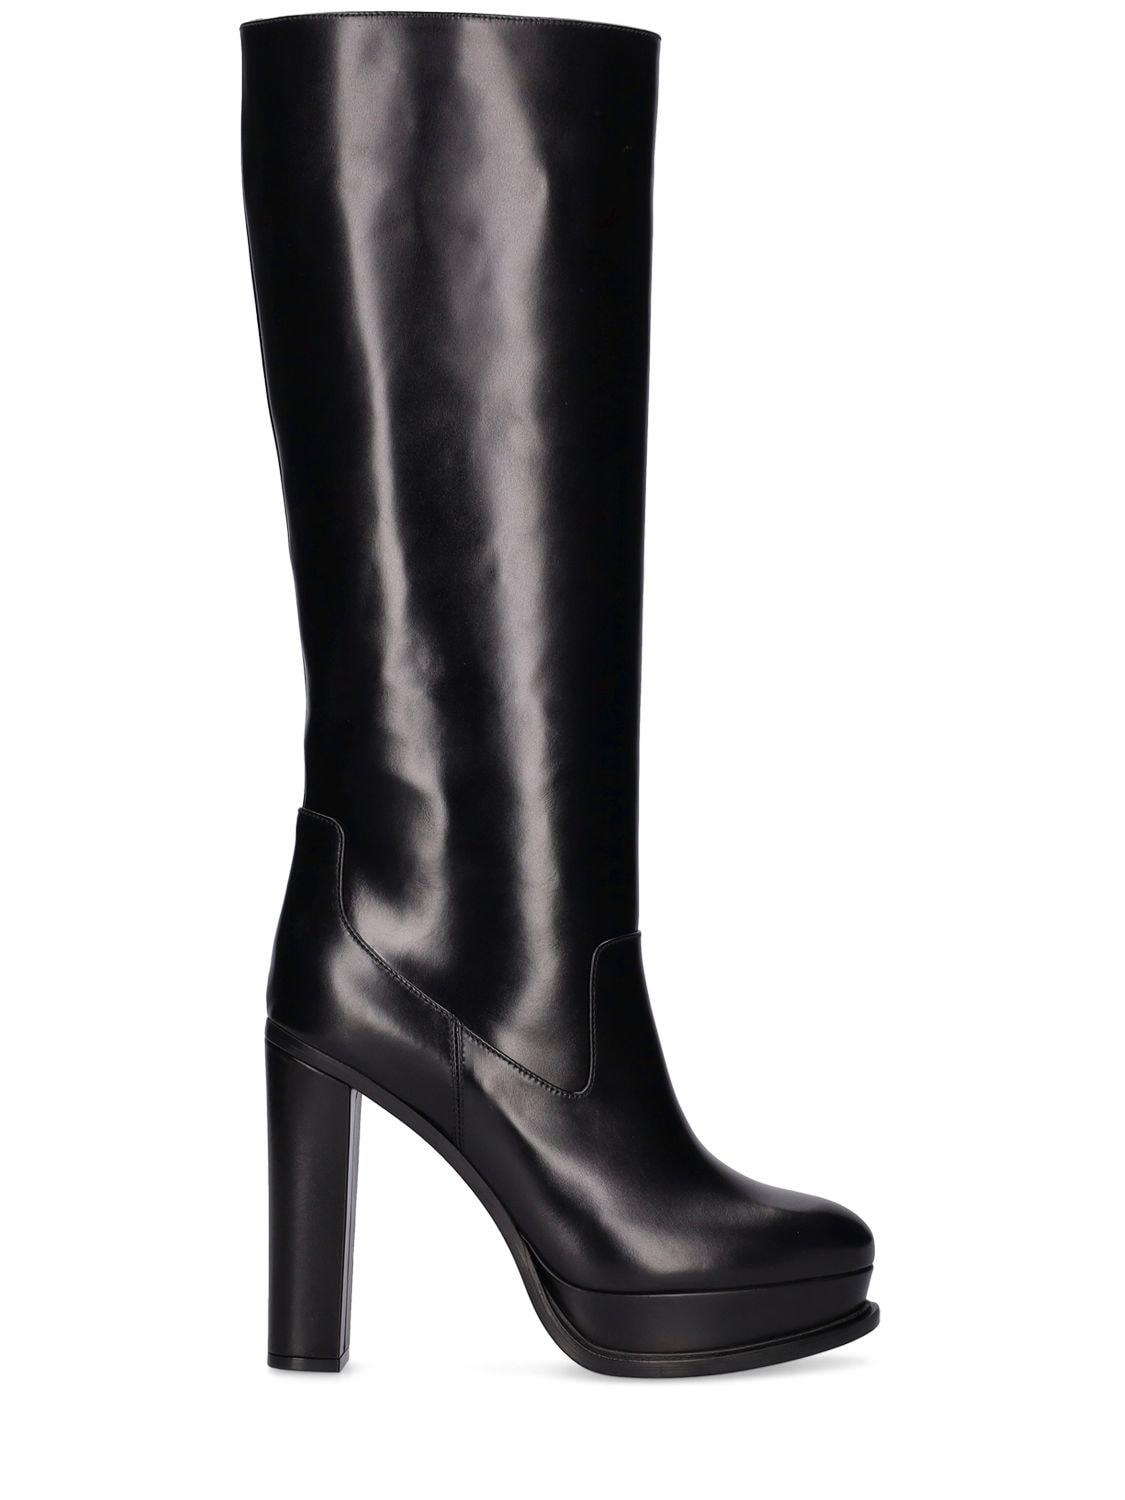 Mm Leather Tall Boots - ALEXANDER MCQUEEN - Modalova